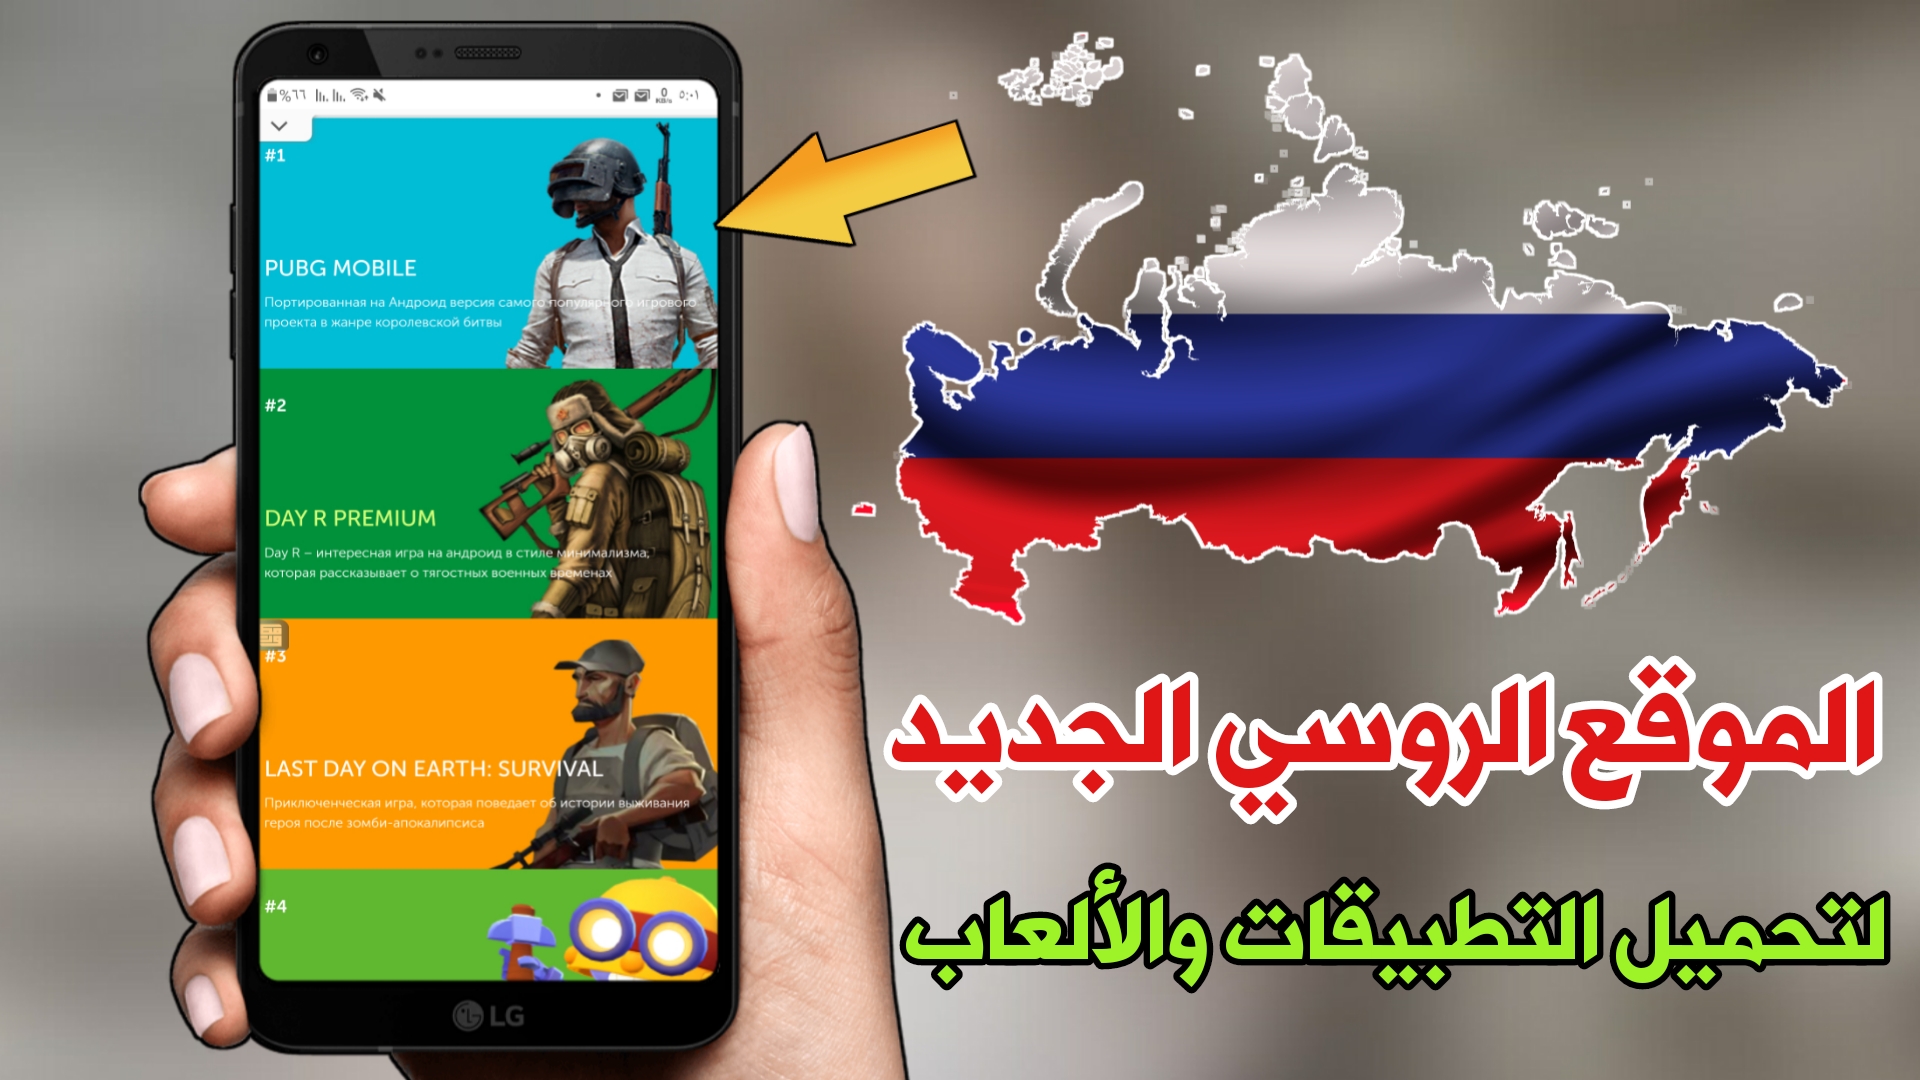 الموقع الروسي الجديد لتحميل التطبيقات والألعاب المدفوعة مجانا